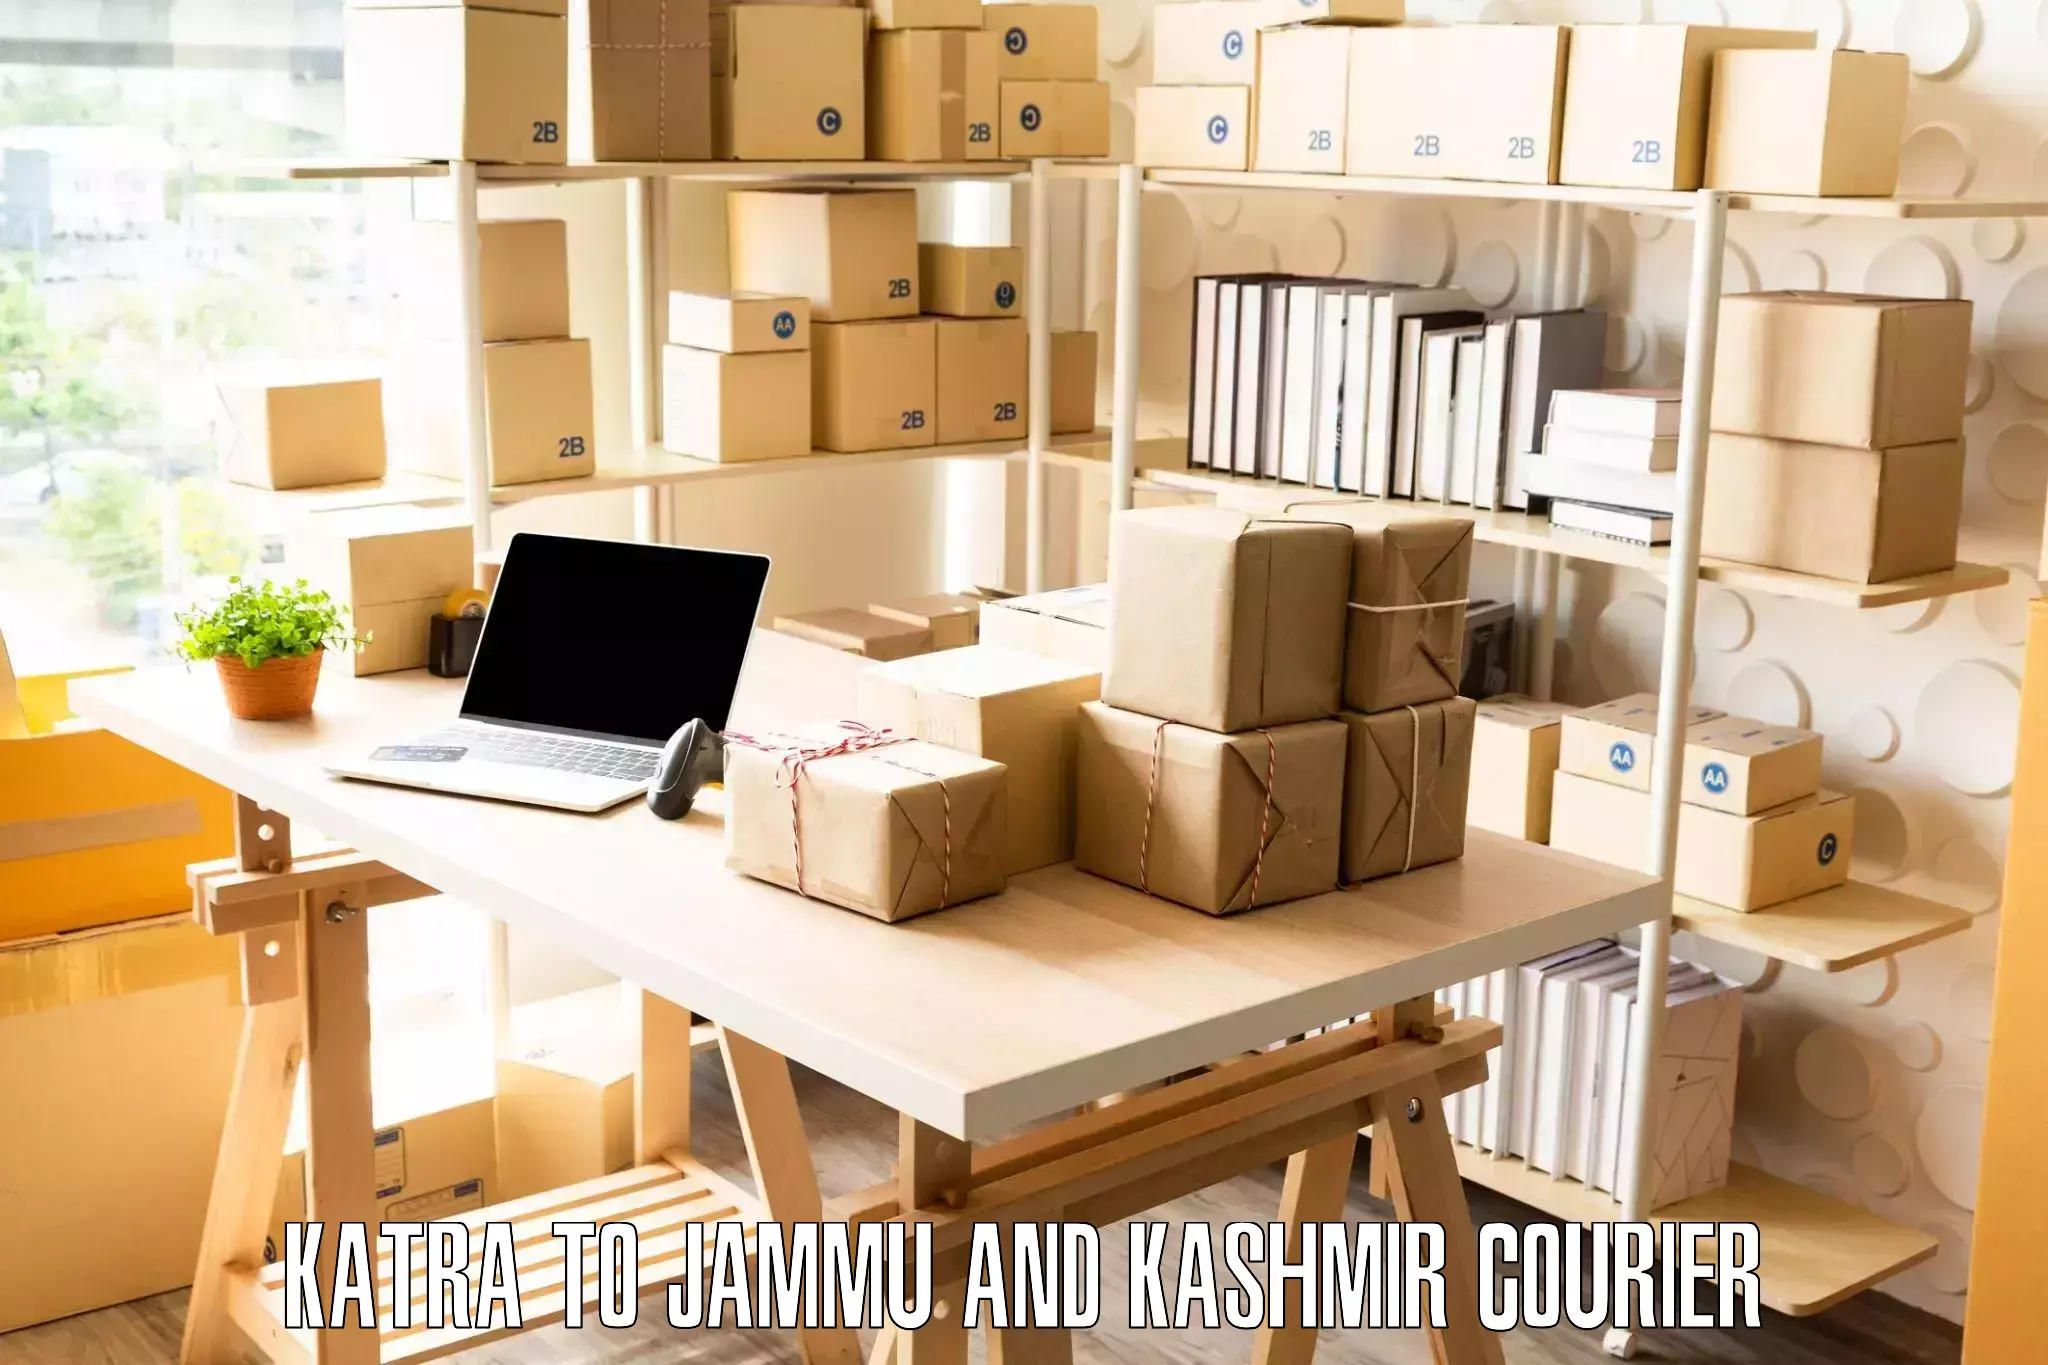 Reliable household shifting Katra to Jammu and Kashmir